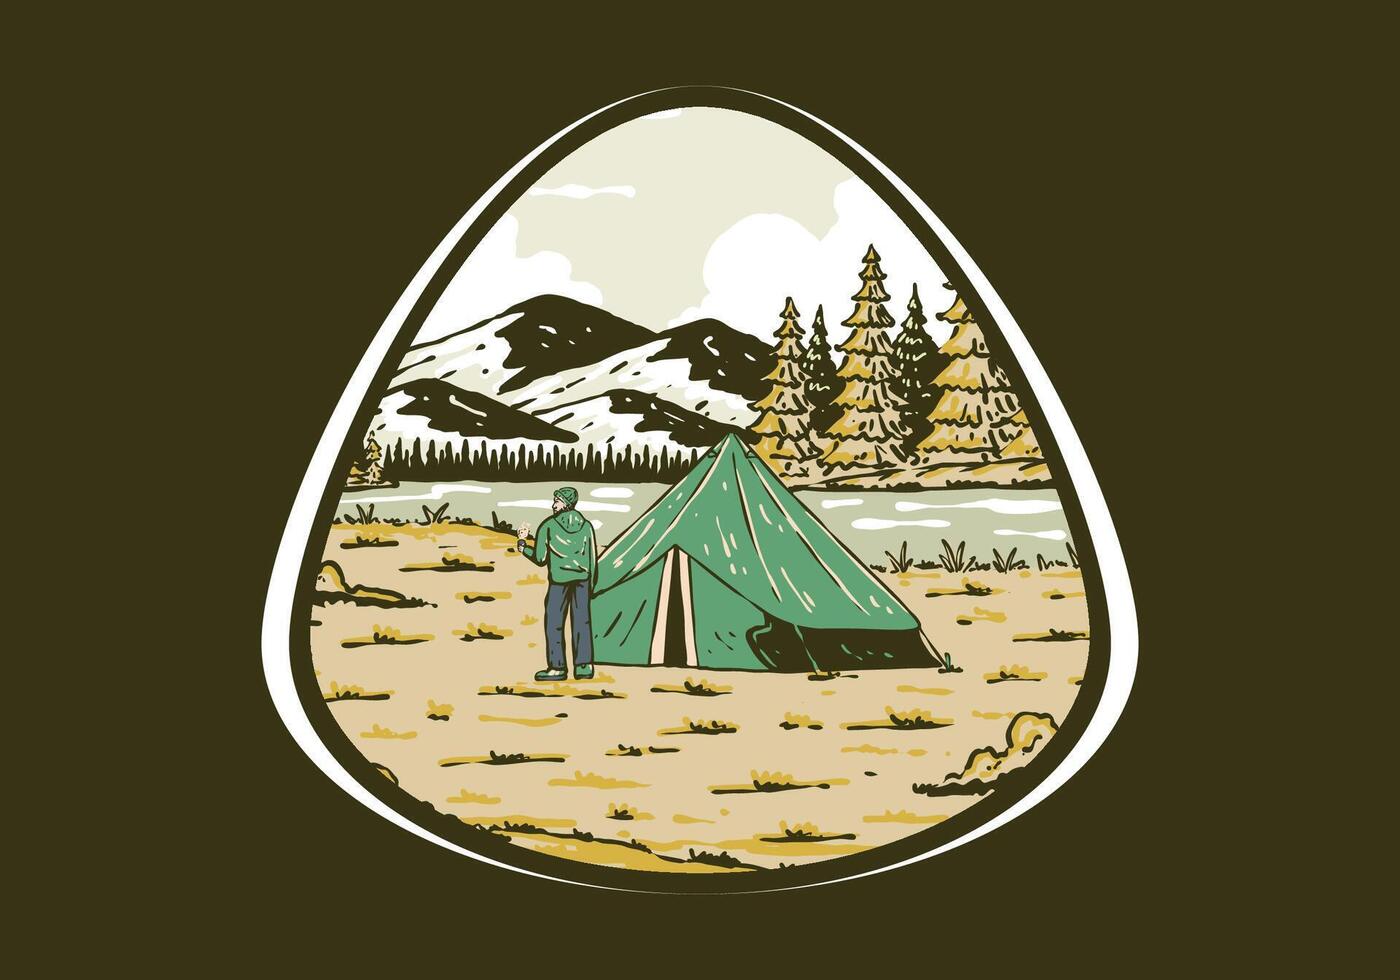 rivière côté camping. ancien Extérieur illustration badge vecteur